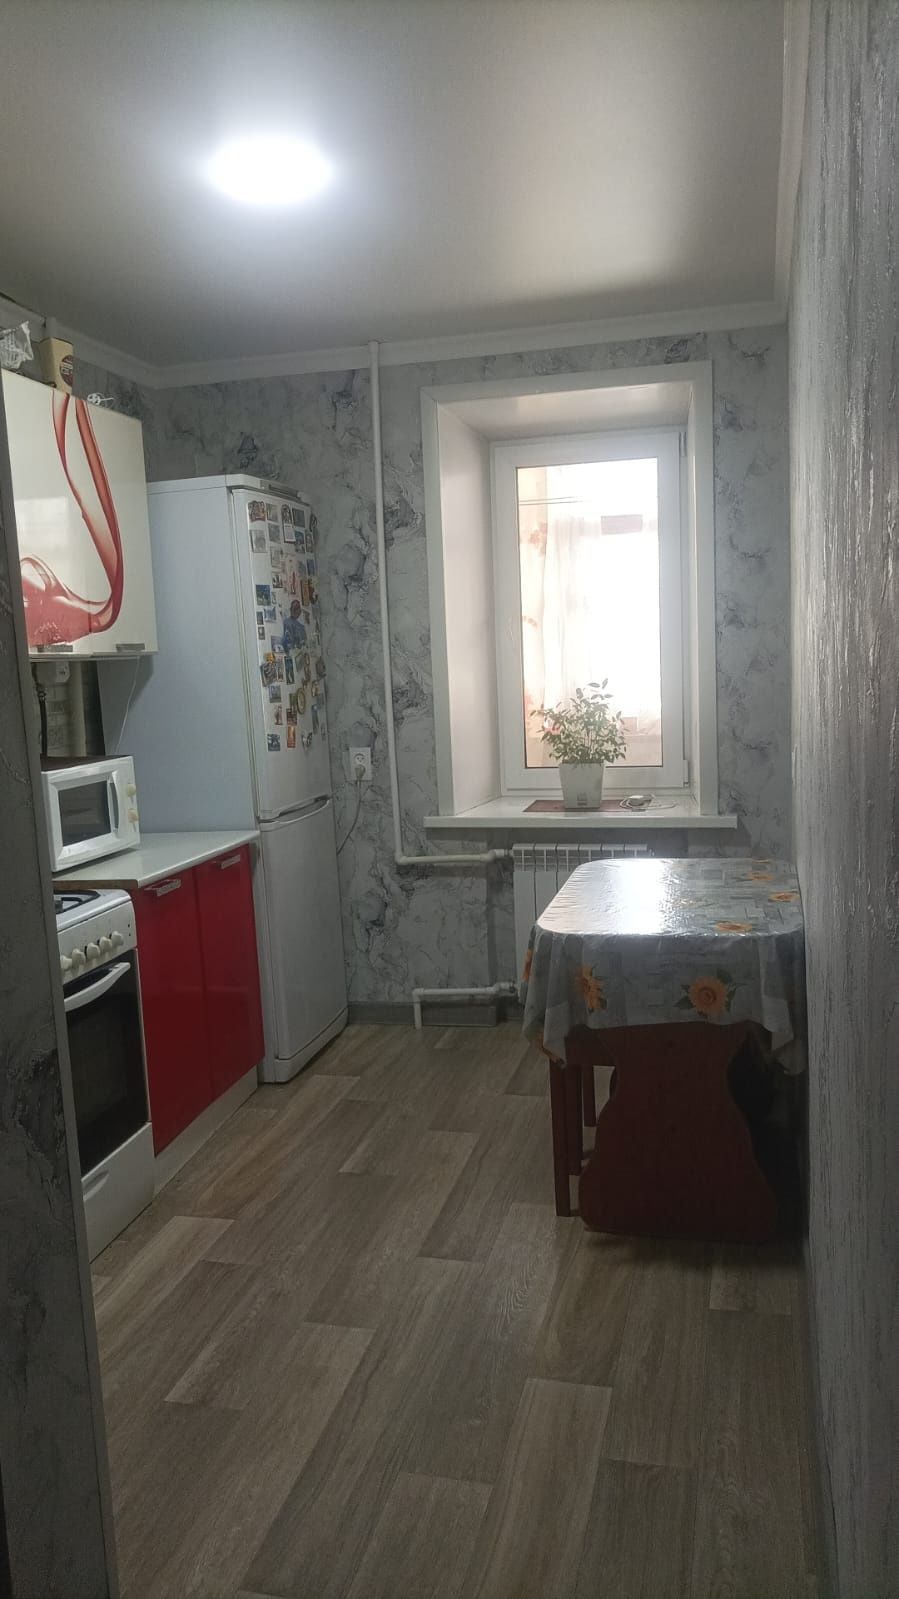 Продаю трёх комнатную квартиру в Сортировке.